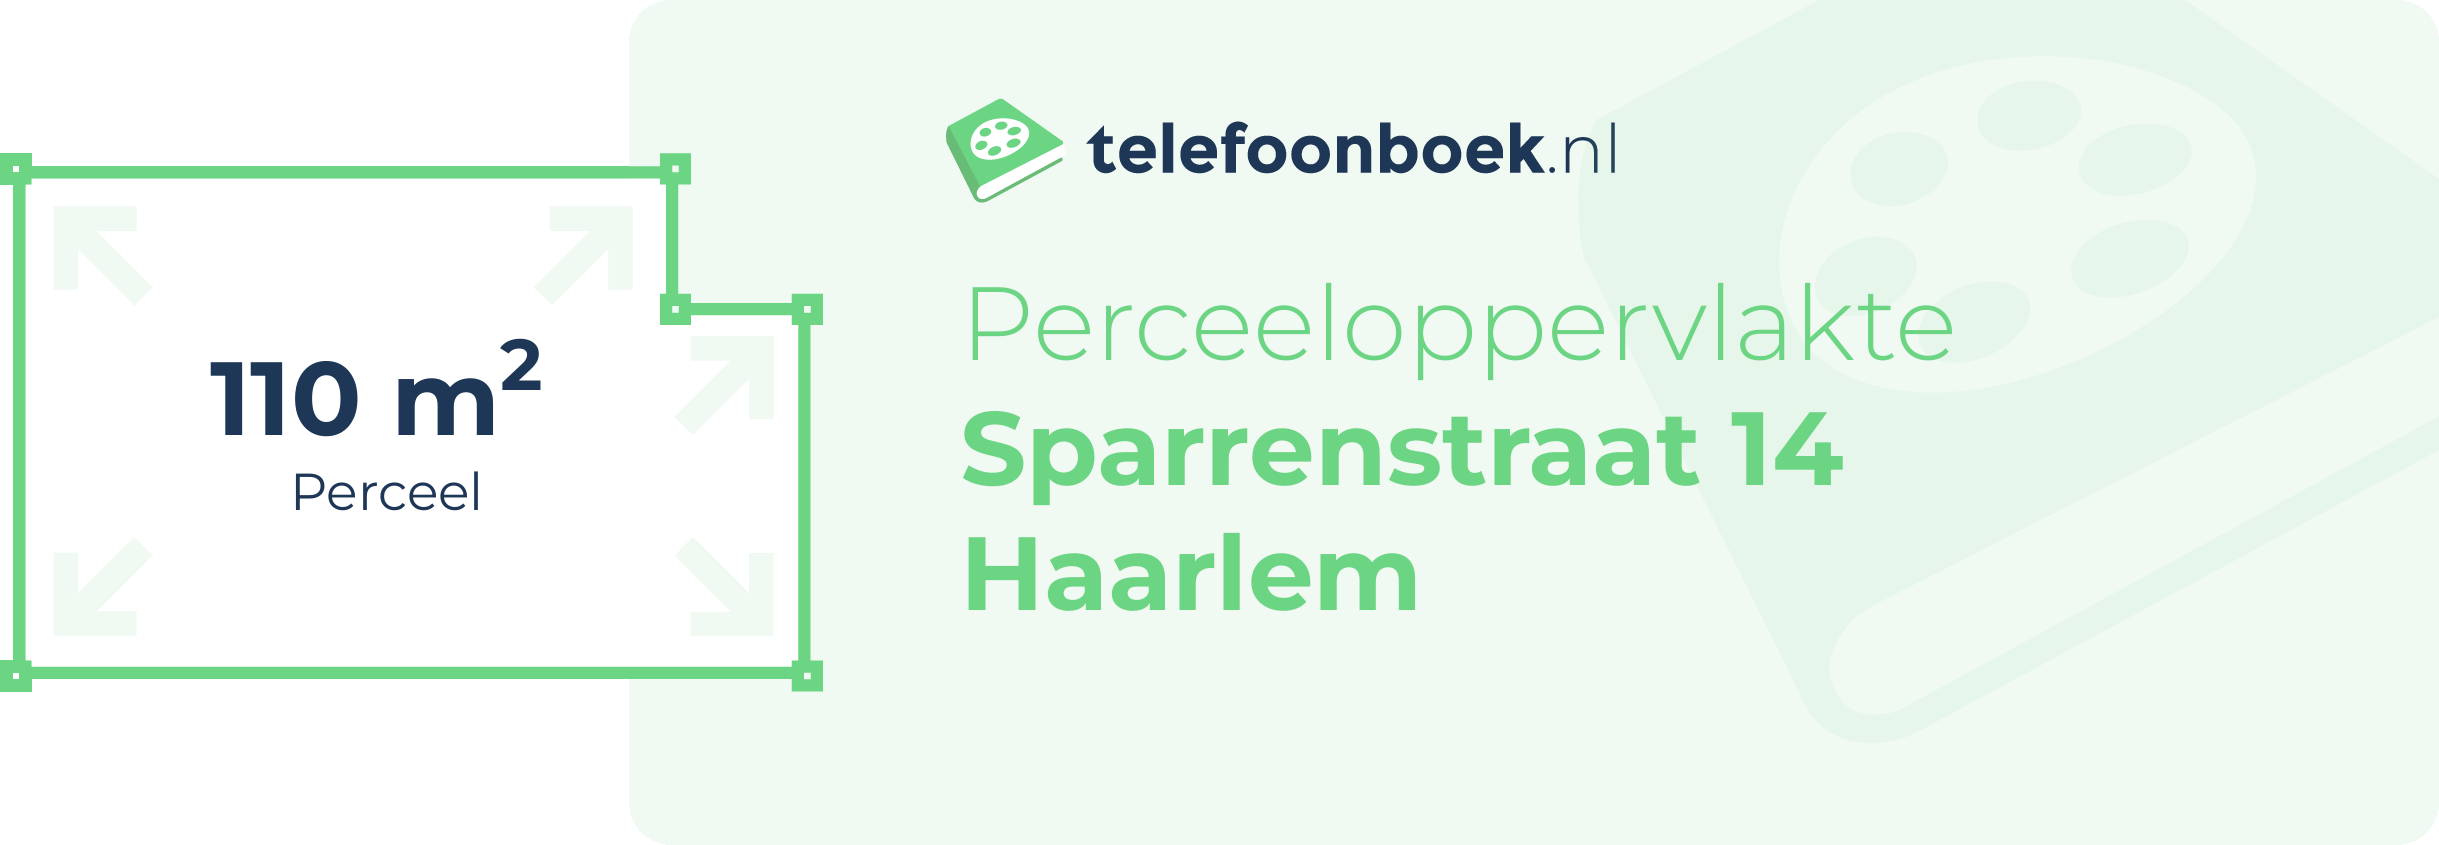 Perceeloppervlakte Sparrenstraat 14 Haarlem